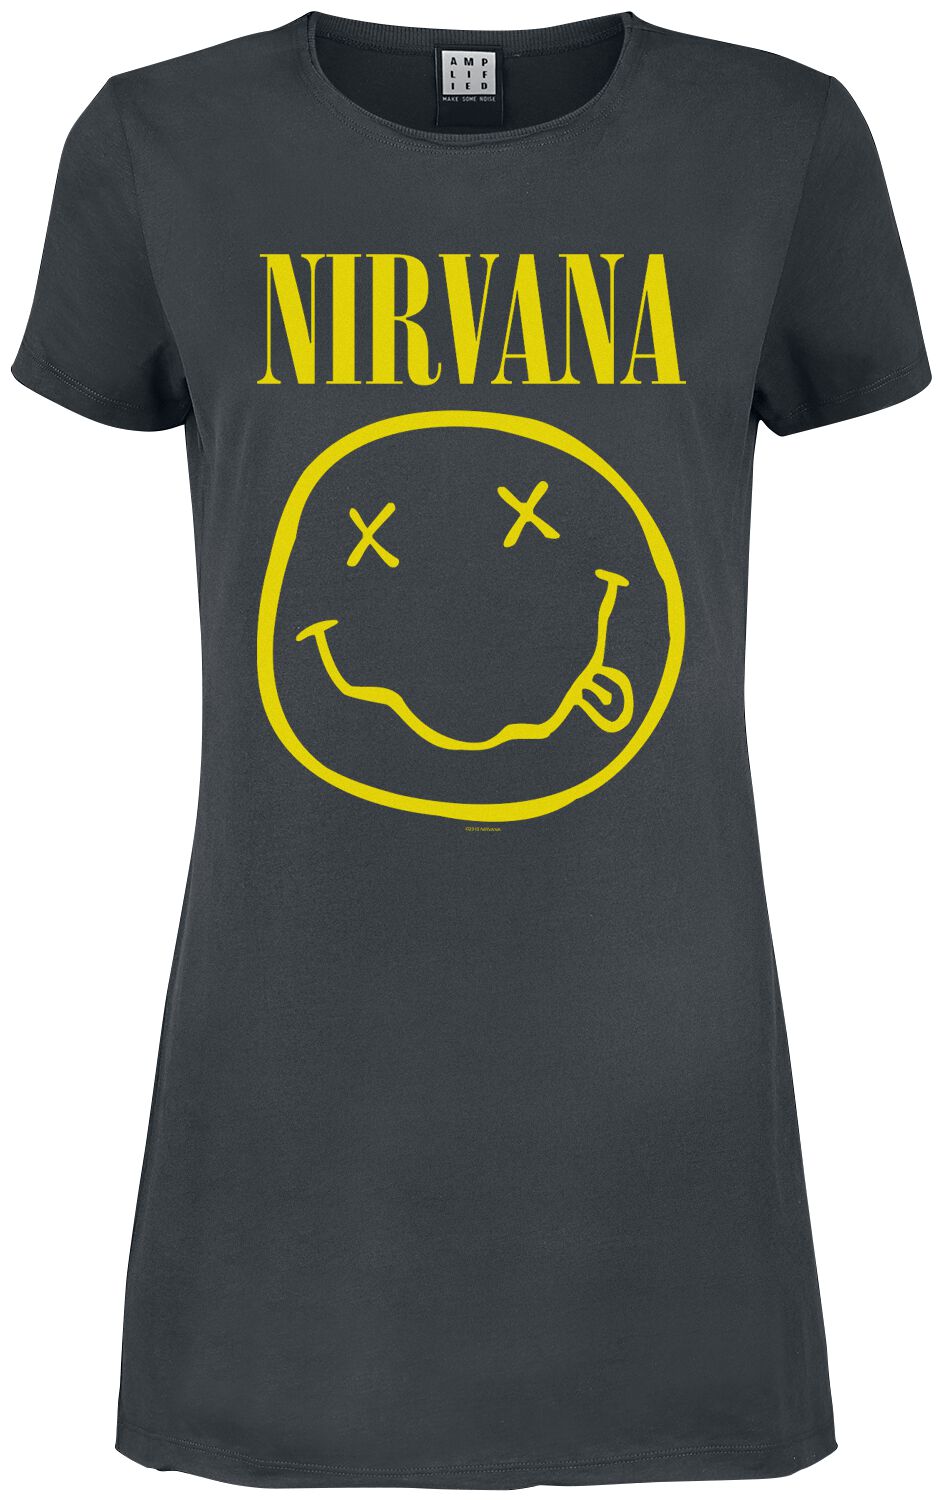 Nirvana Kurzes Kleid - Amplified Collection - Smiley - S bis XXL - für Damen - Größe M - charcoal  - Lizenziertes Merchandise!